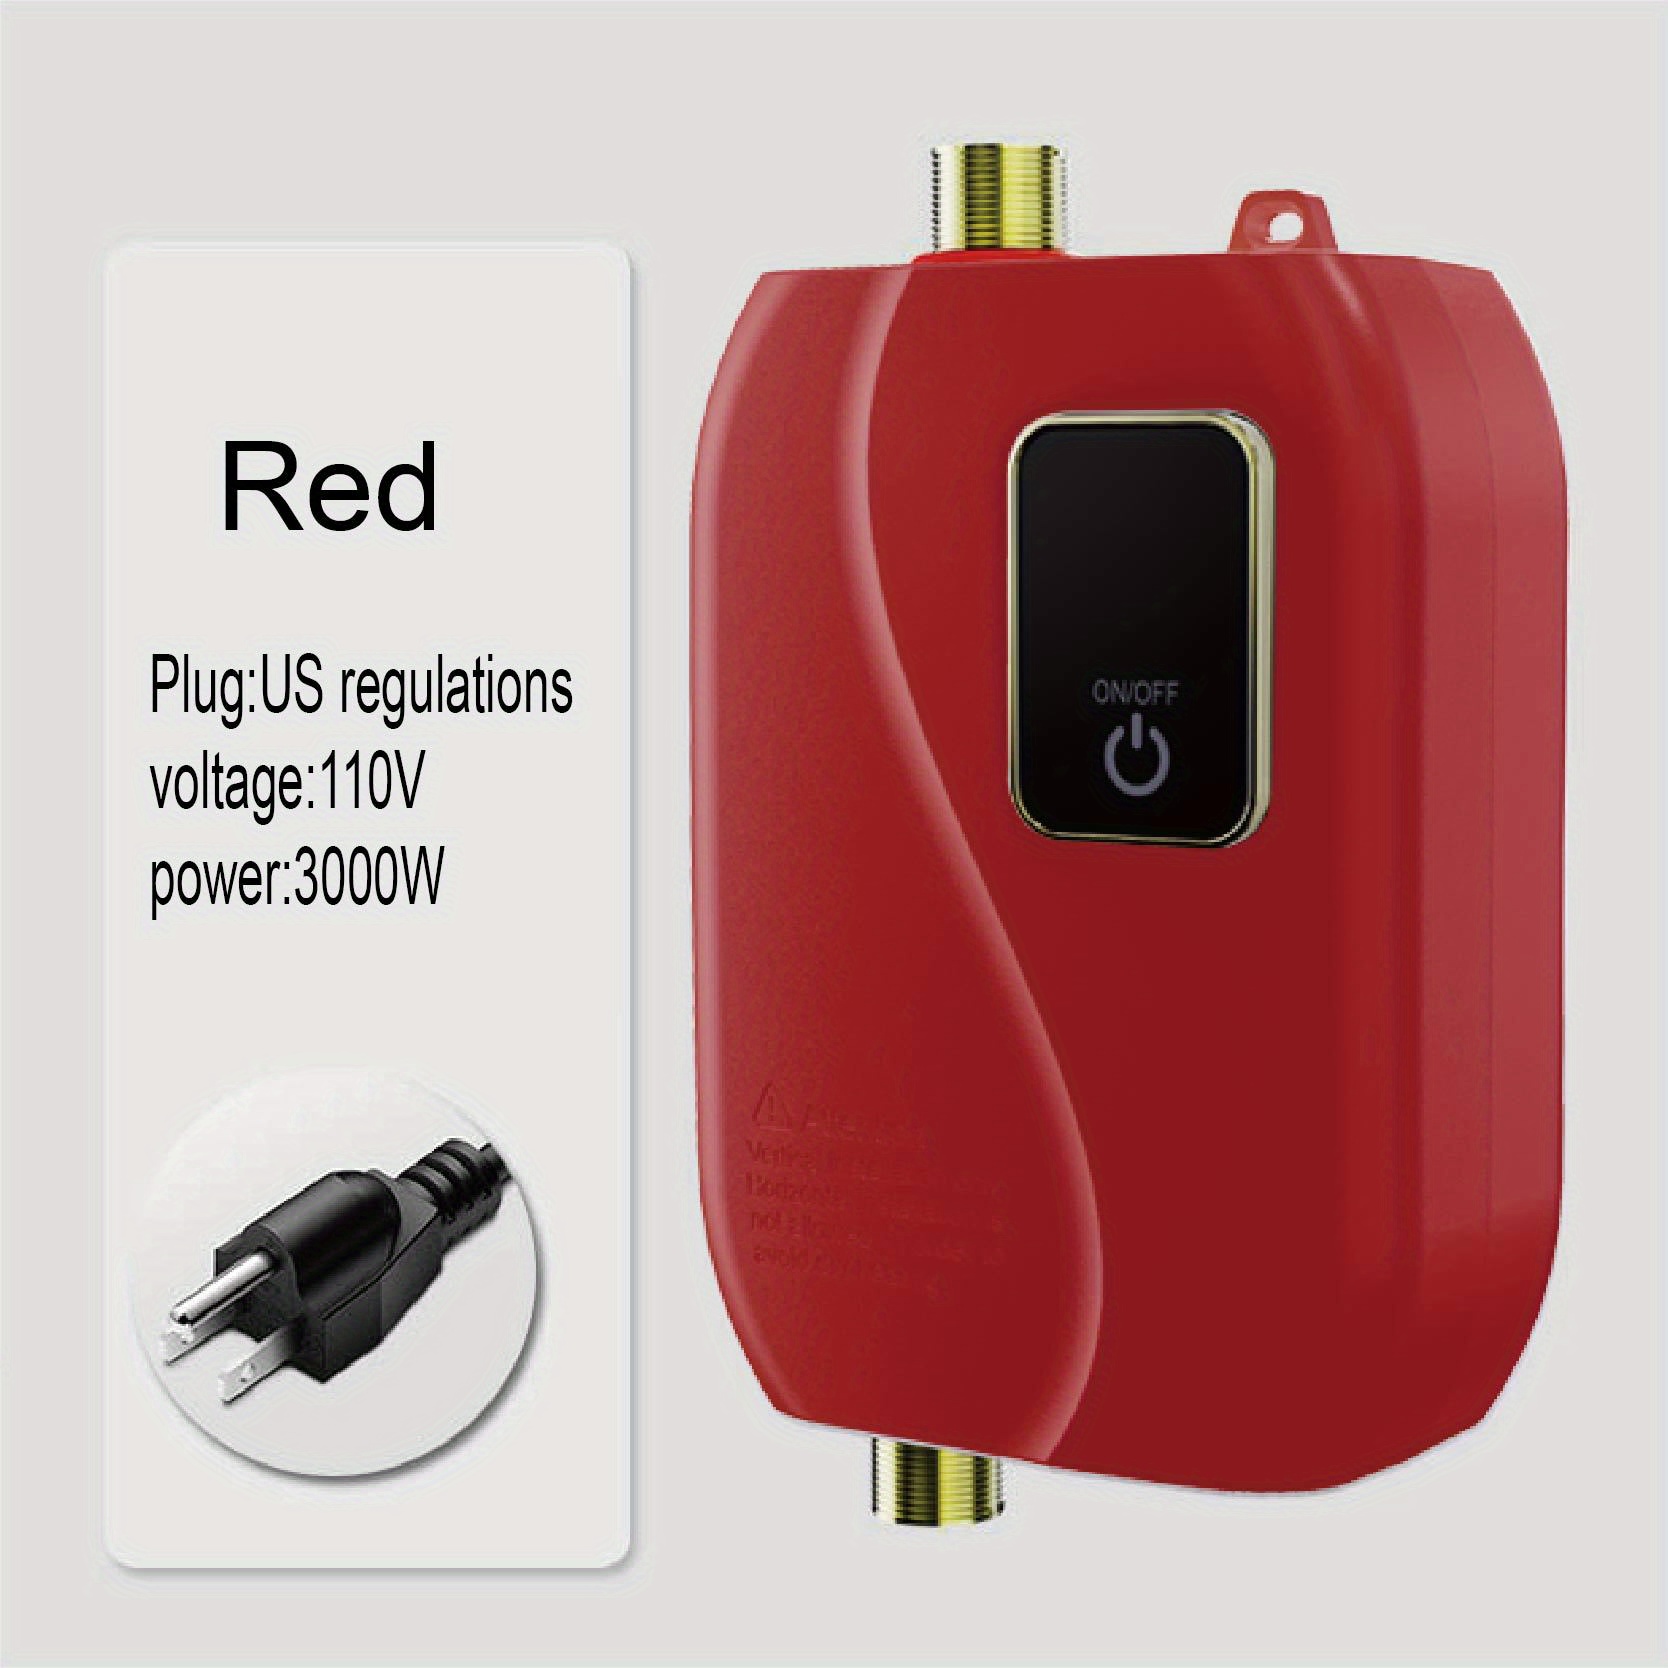 Calentador de agua eléctrico digital, control remoto, calentador de agua  instantáneo sin tanque para cocina, baño, ducha, calentamiento rápido (rojo)